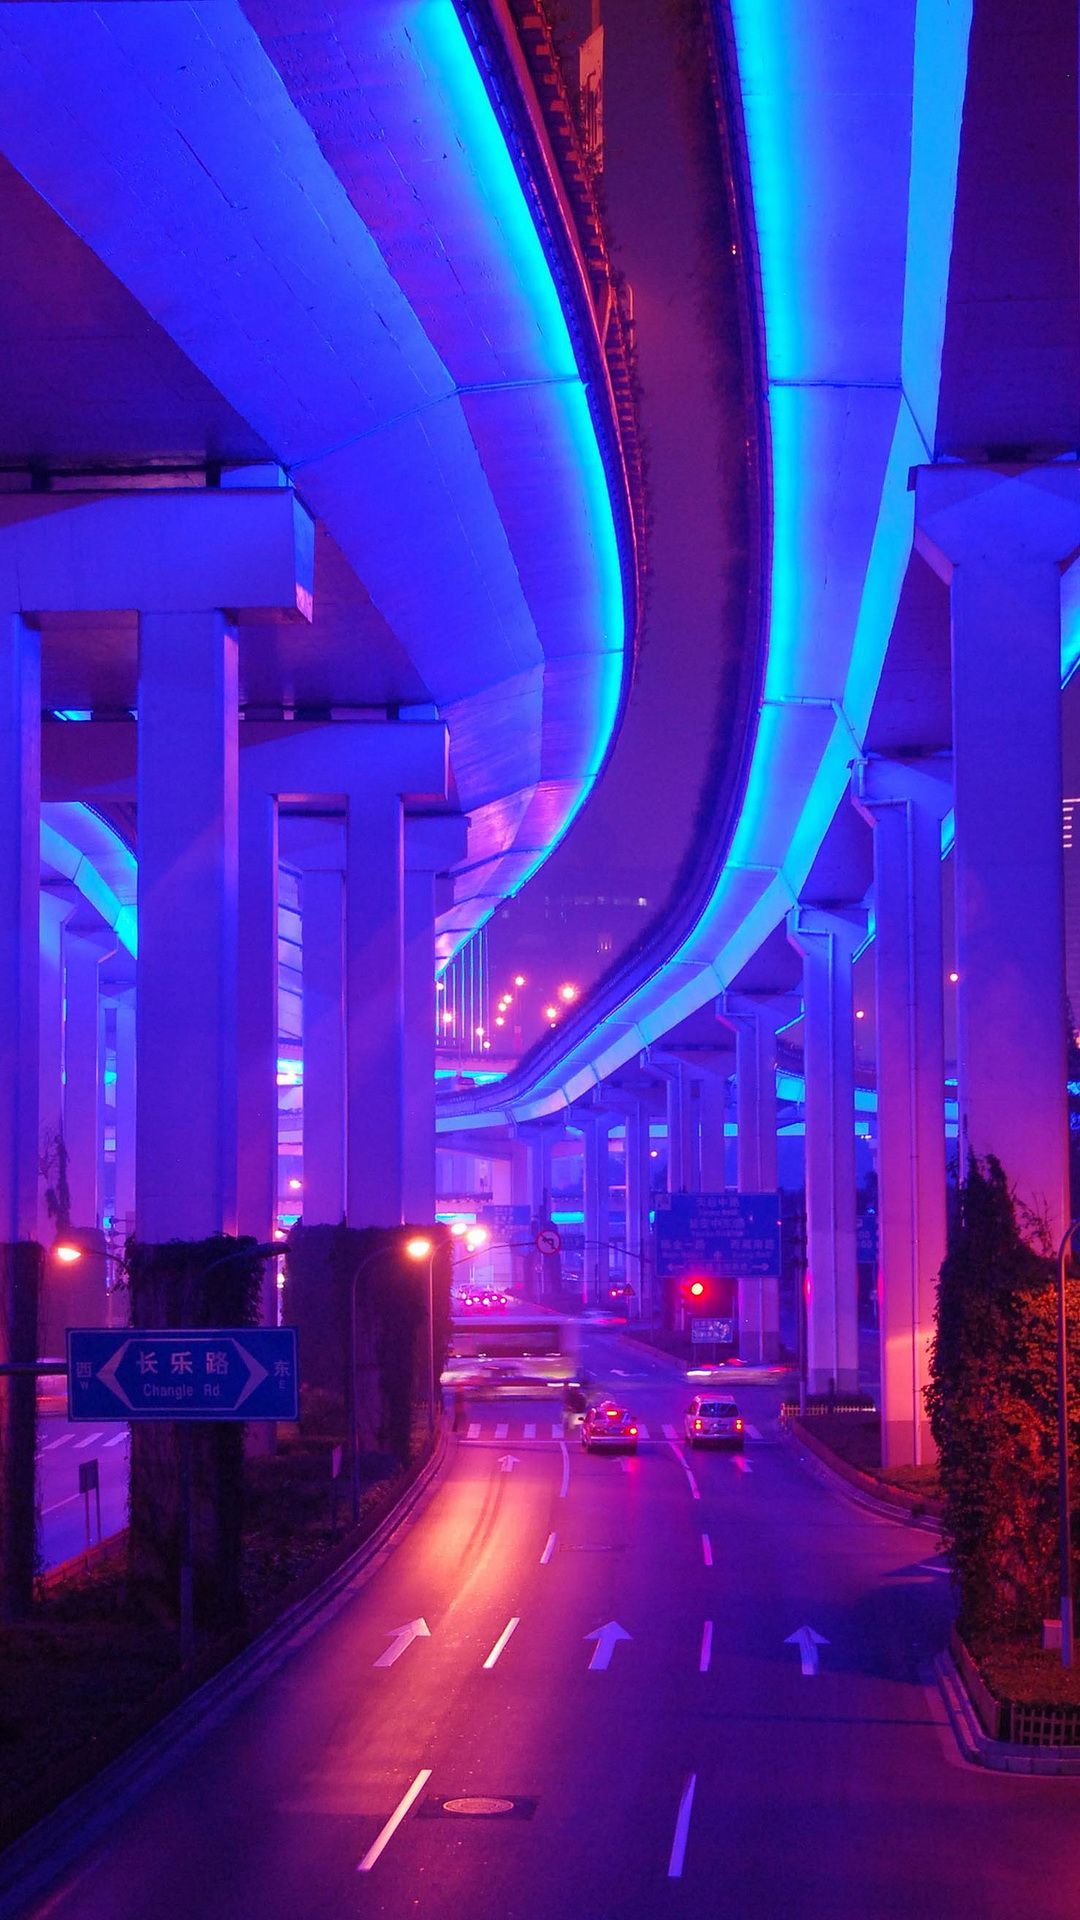 vaporwave #road #city #retro #color #blue #purple #aesthetic